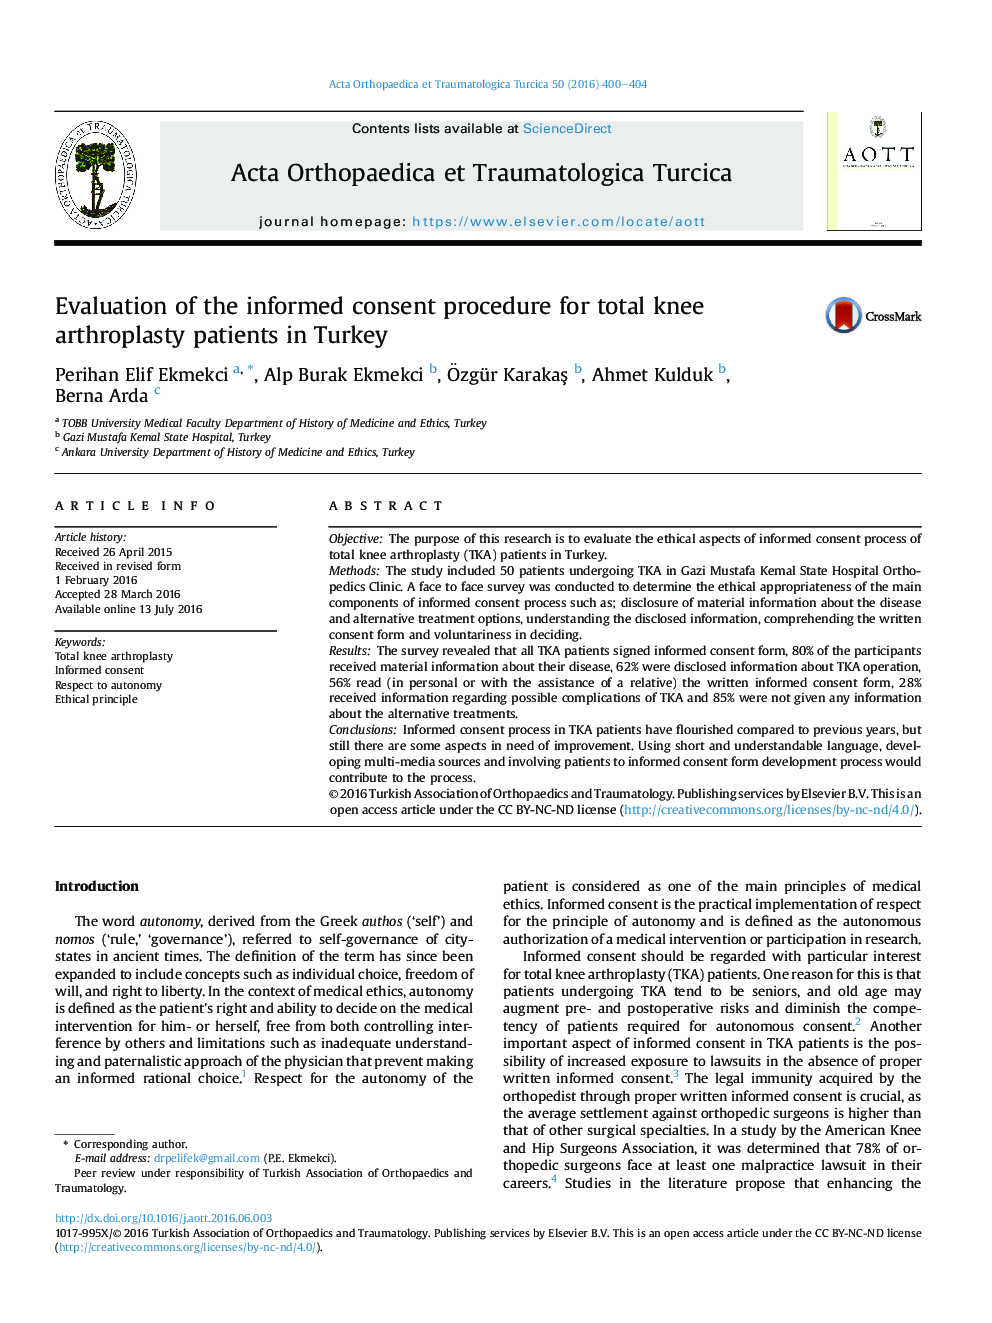 ارزیابی روش رضایت آگاهانه برای بیماران آرتروپلاستی کل زانو در ترکیه 